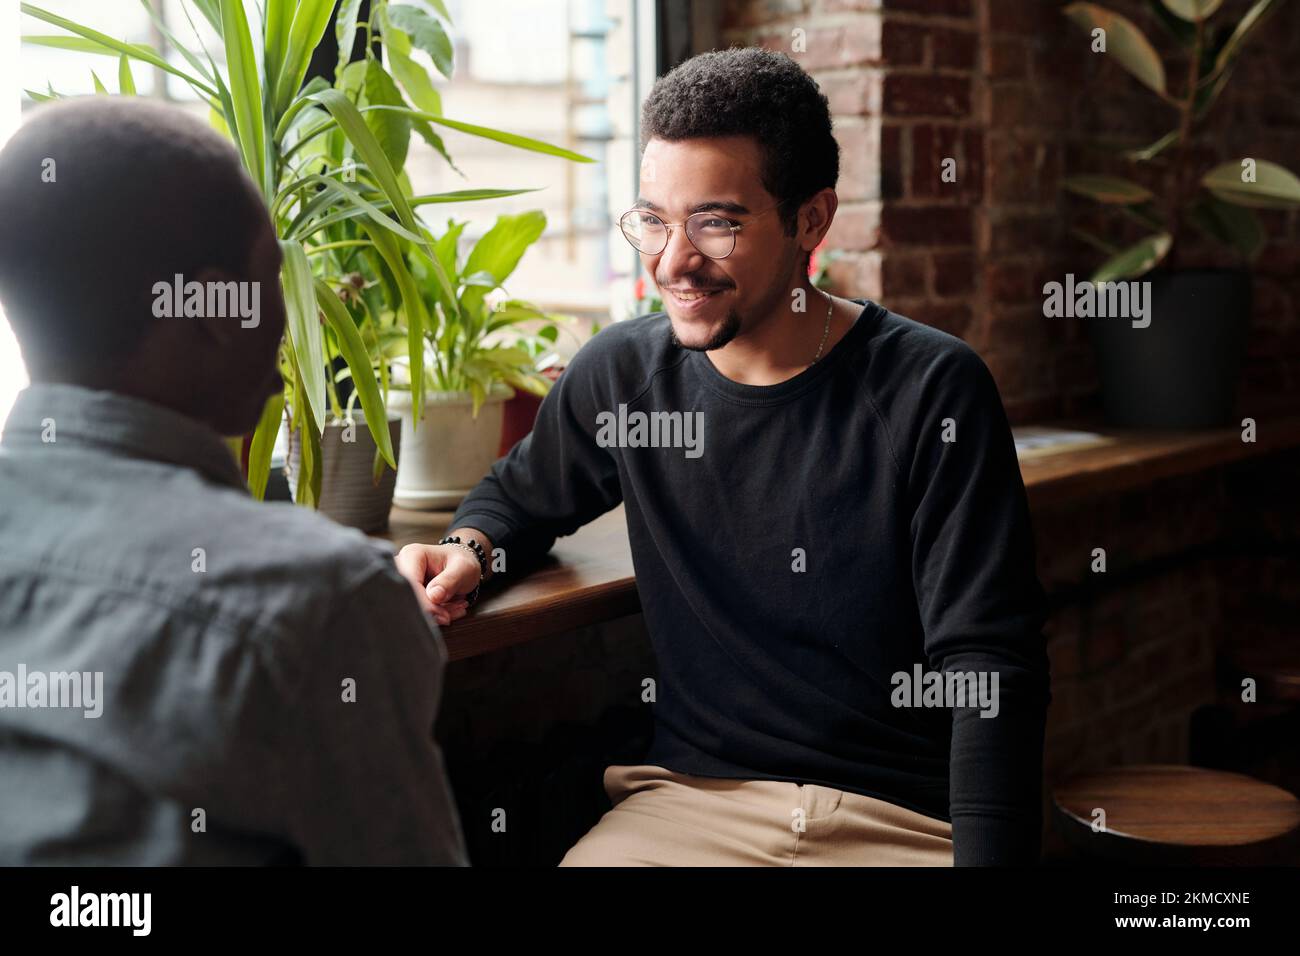 Ein junger lächelnder Geschäftsmann in Freizeitkleidung, der einen afroamerikanischen männlichen Kollegen mit einem Lächeln ansieht, während er über Organisationspunkte spricht Stockfoto